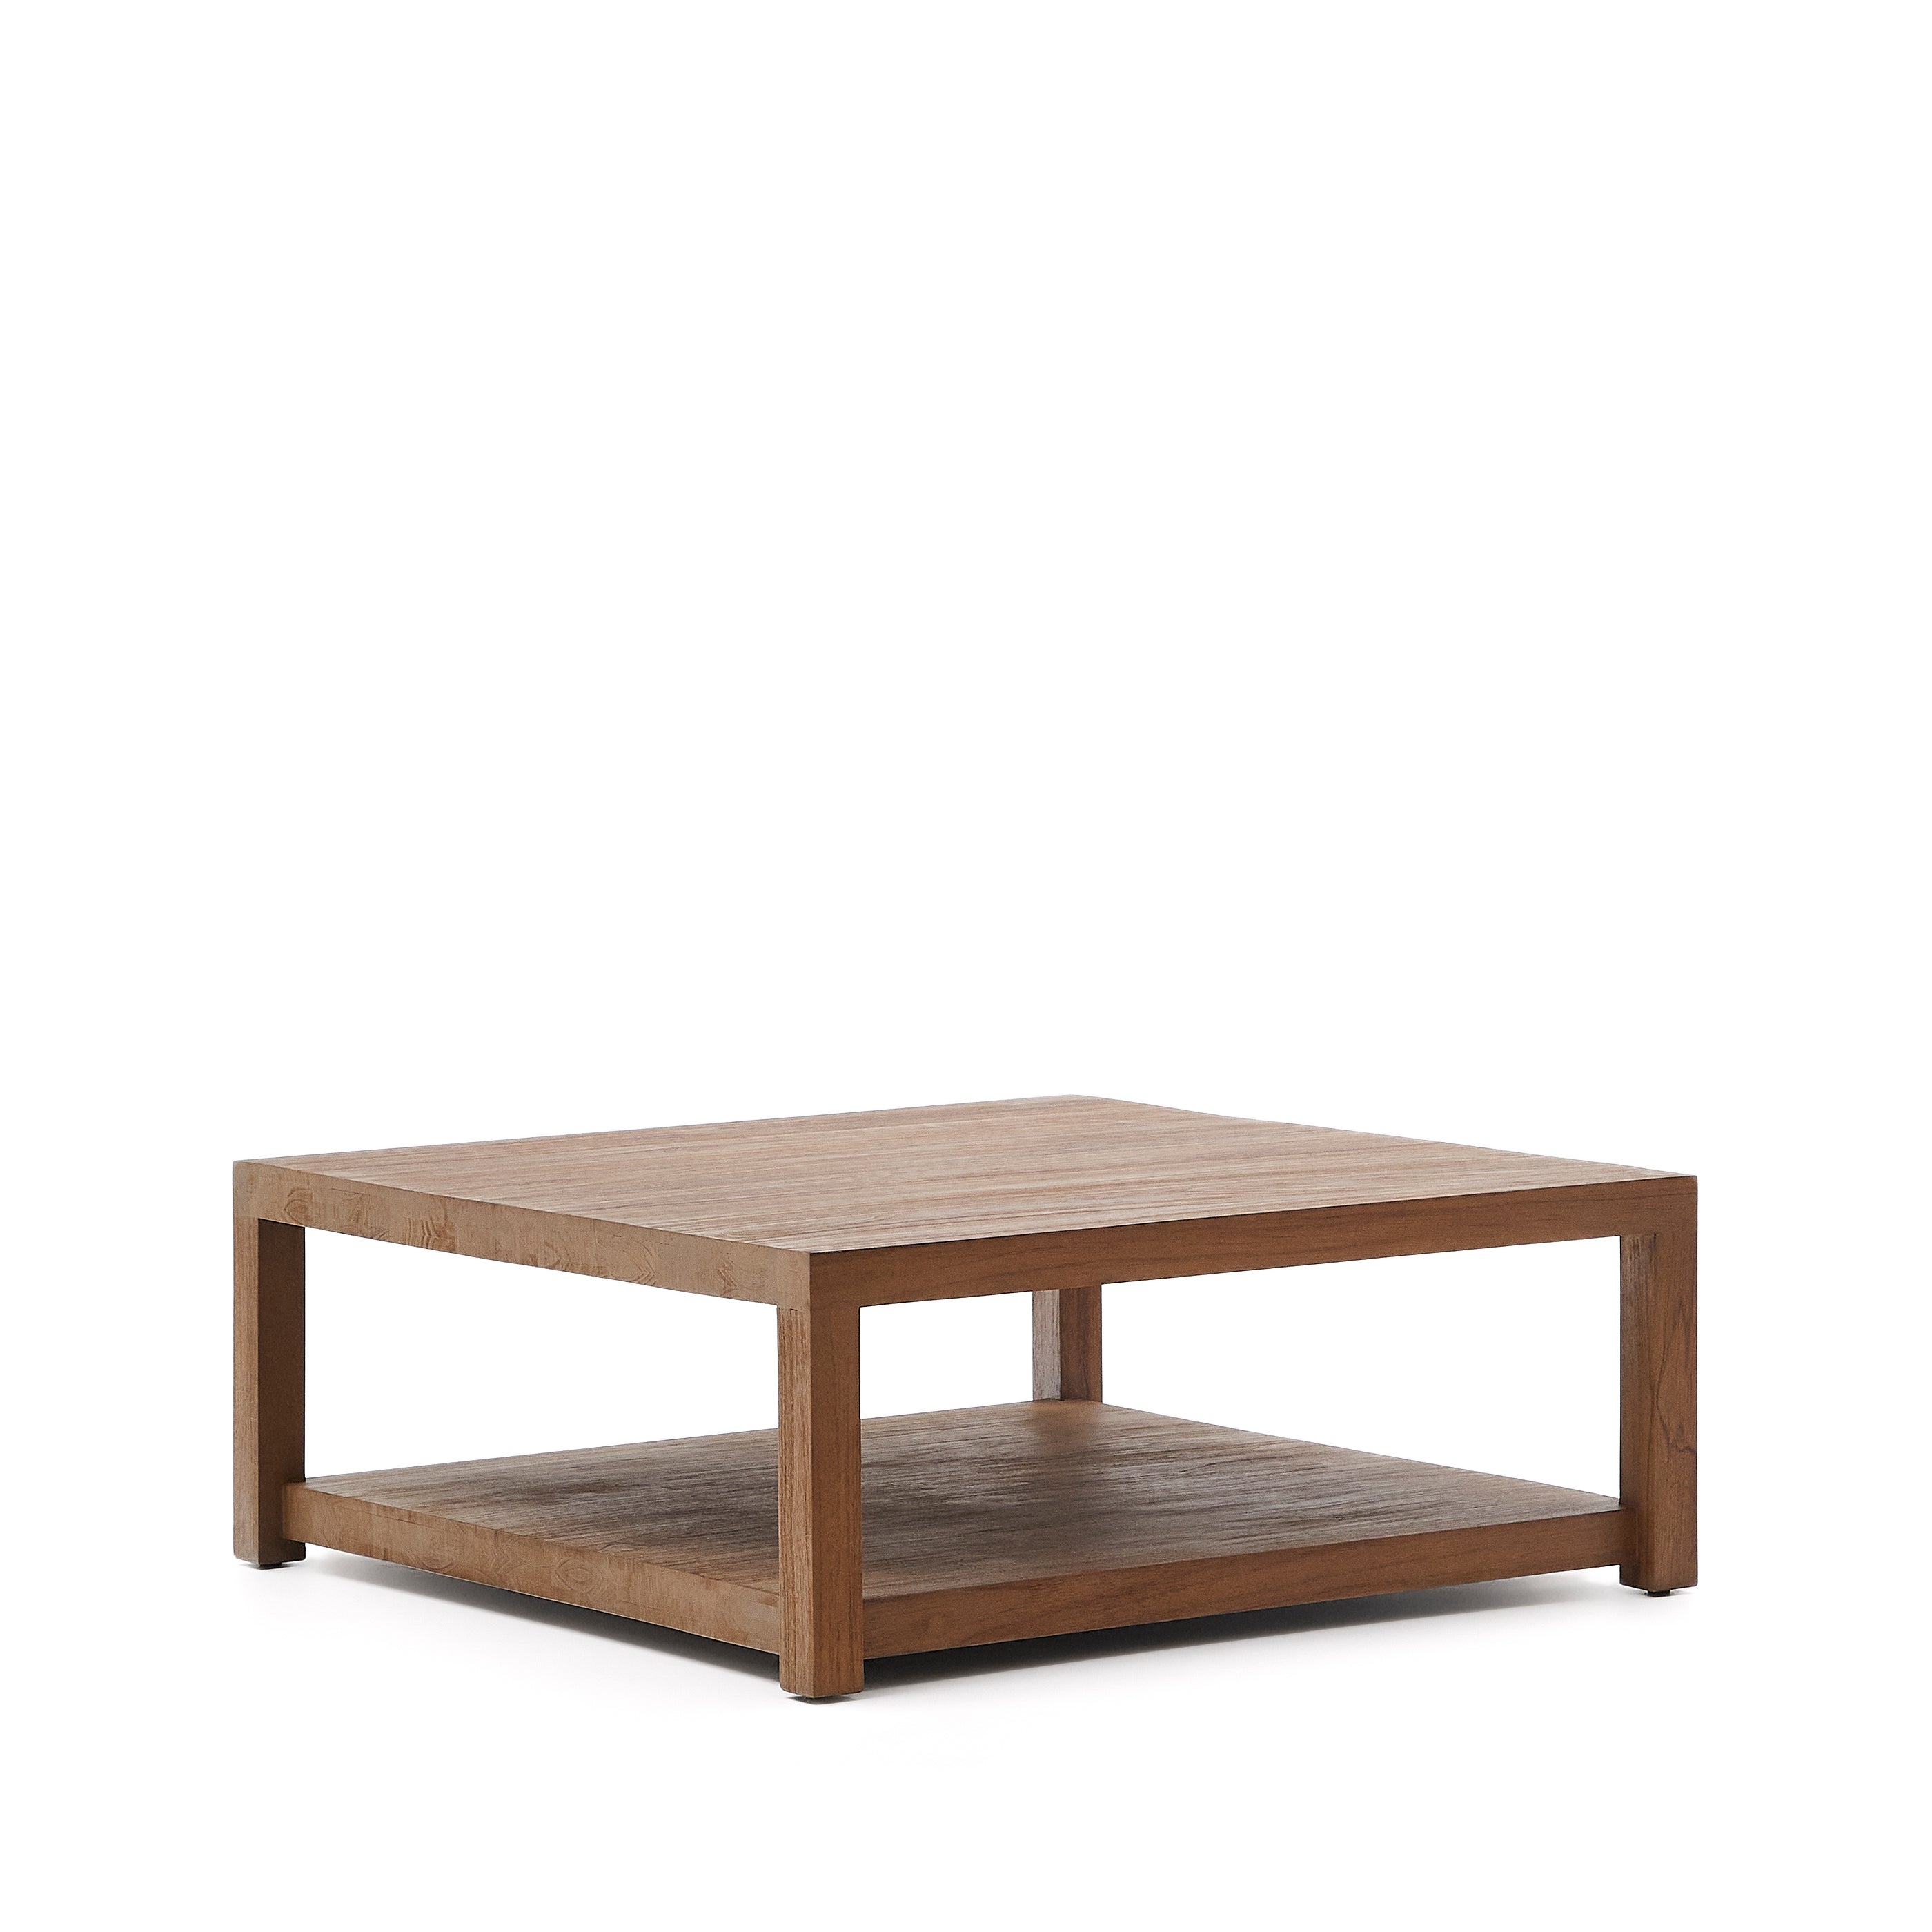 Sashi oldalsó asztal, készült masszív teakfából, 90 x 90 cm